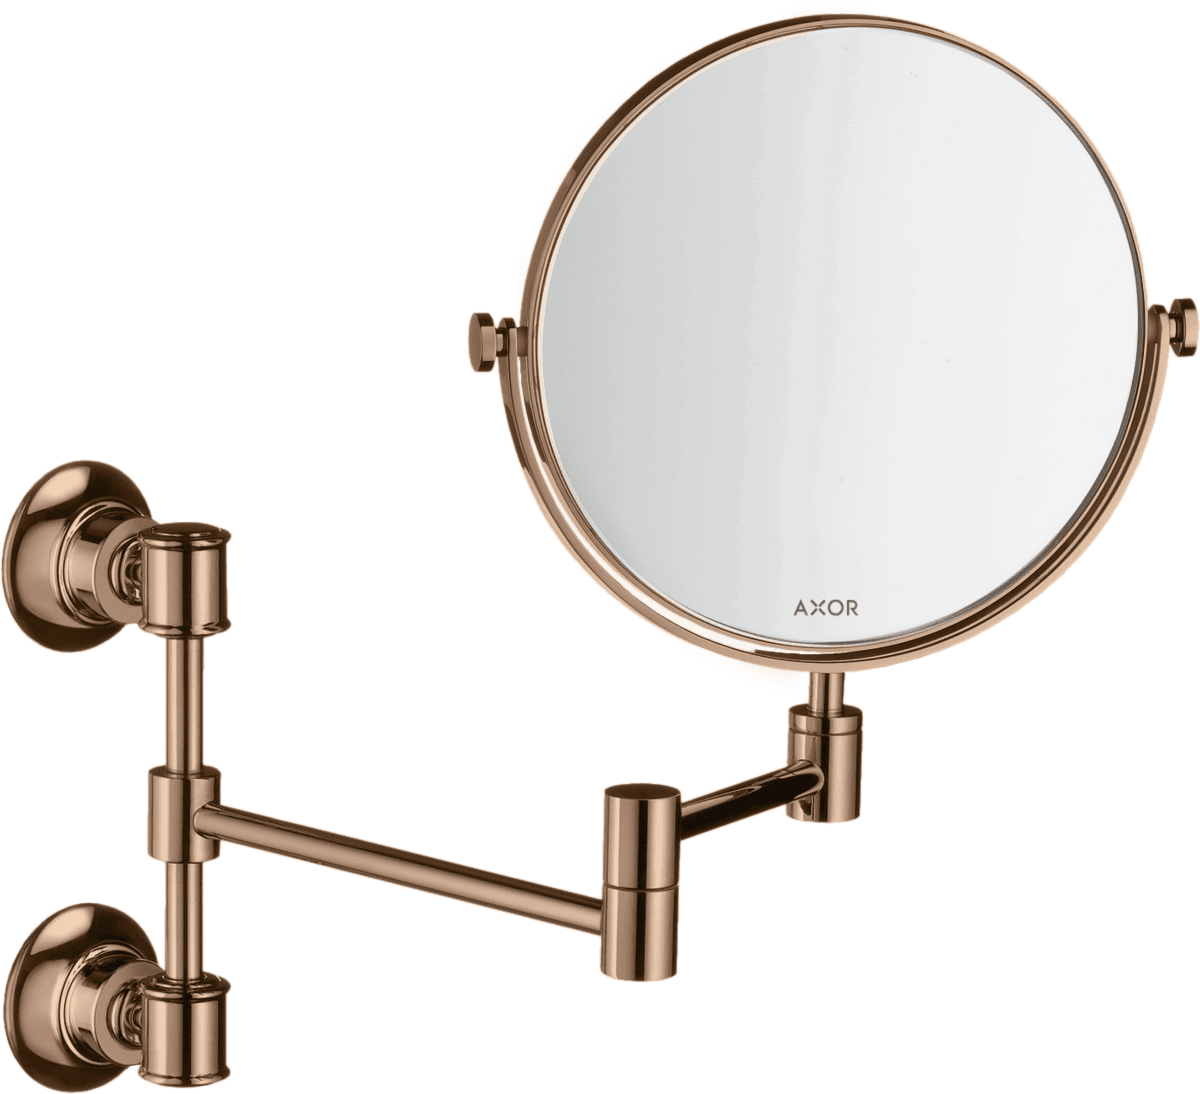 εικόνα του HANSGROHE AXOR Montreux Shaving mirror #42090300 - Polished Red Gold